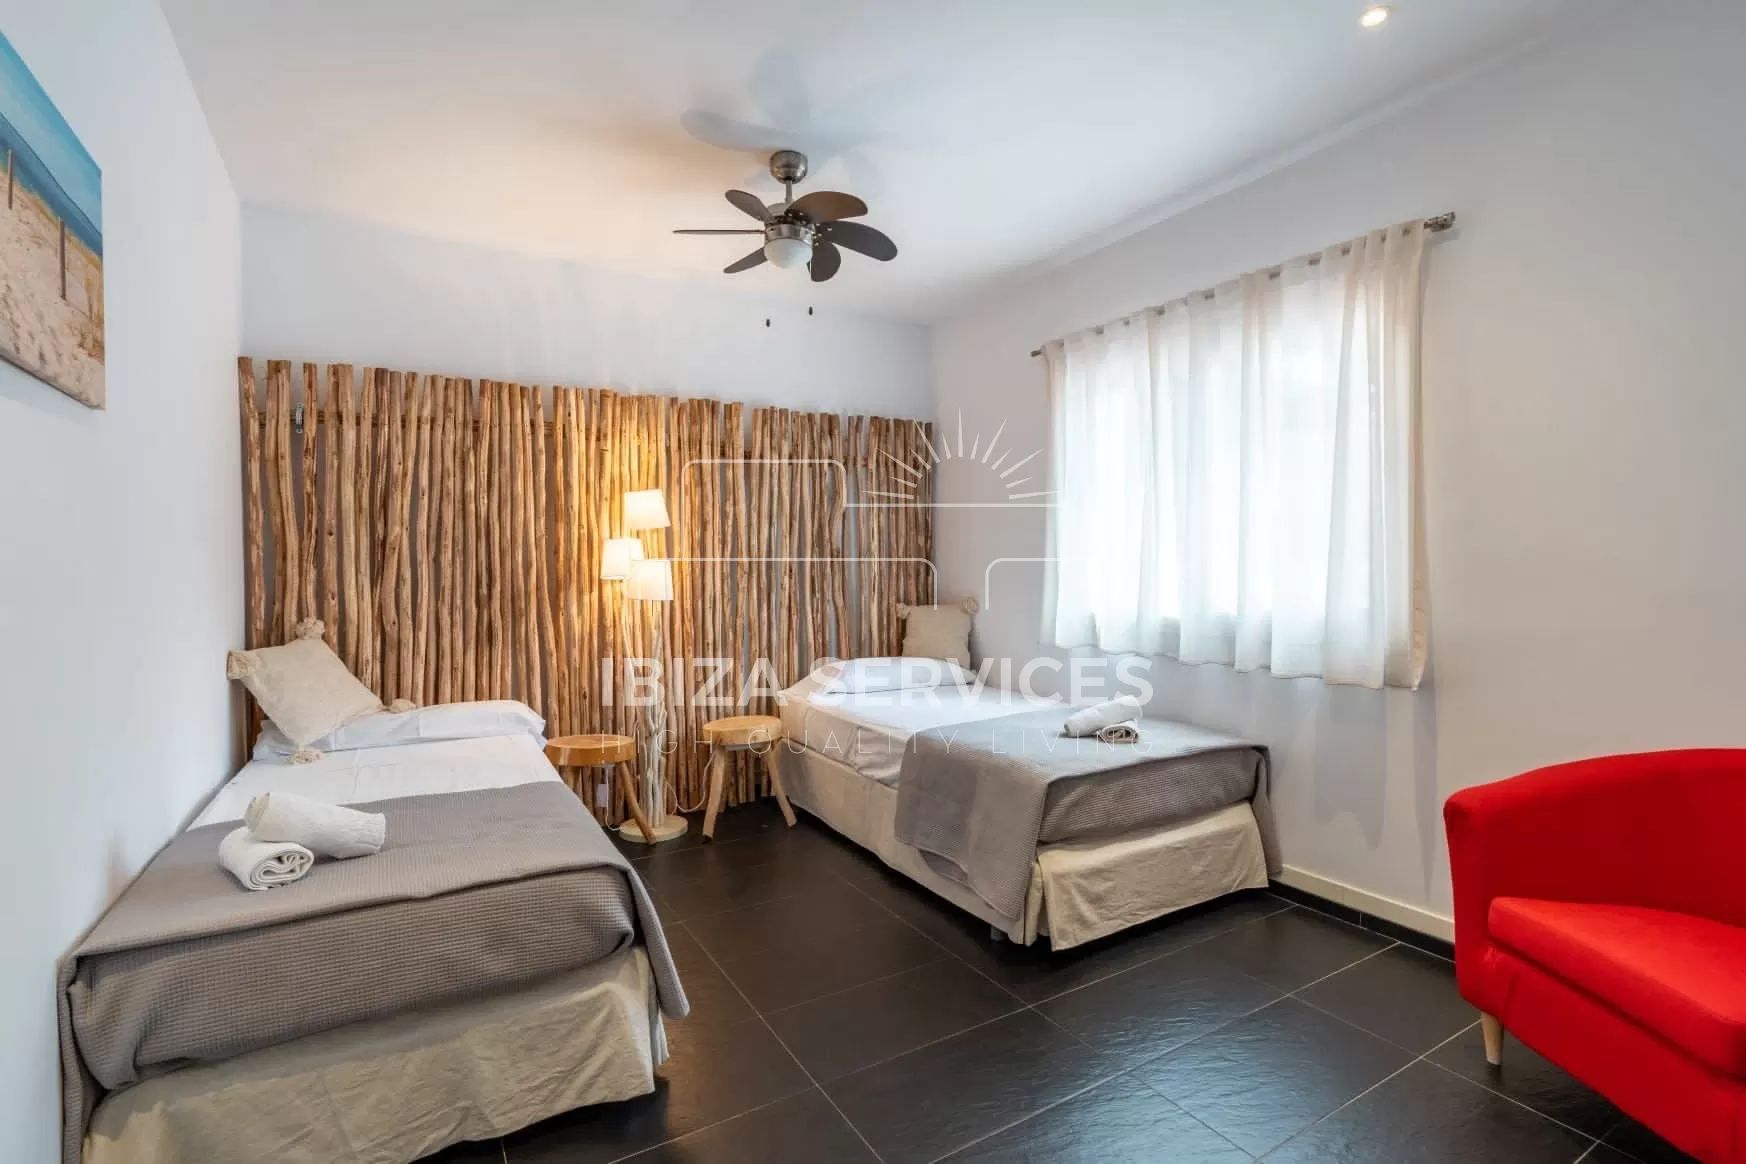 Villa Tranquility – Location de vacances de 3 chambres à Roca Lisa